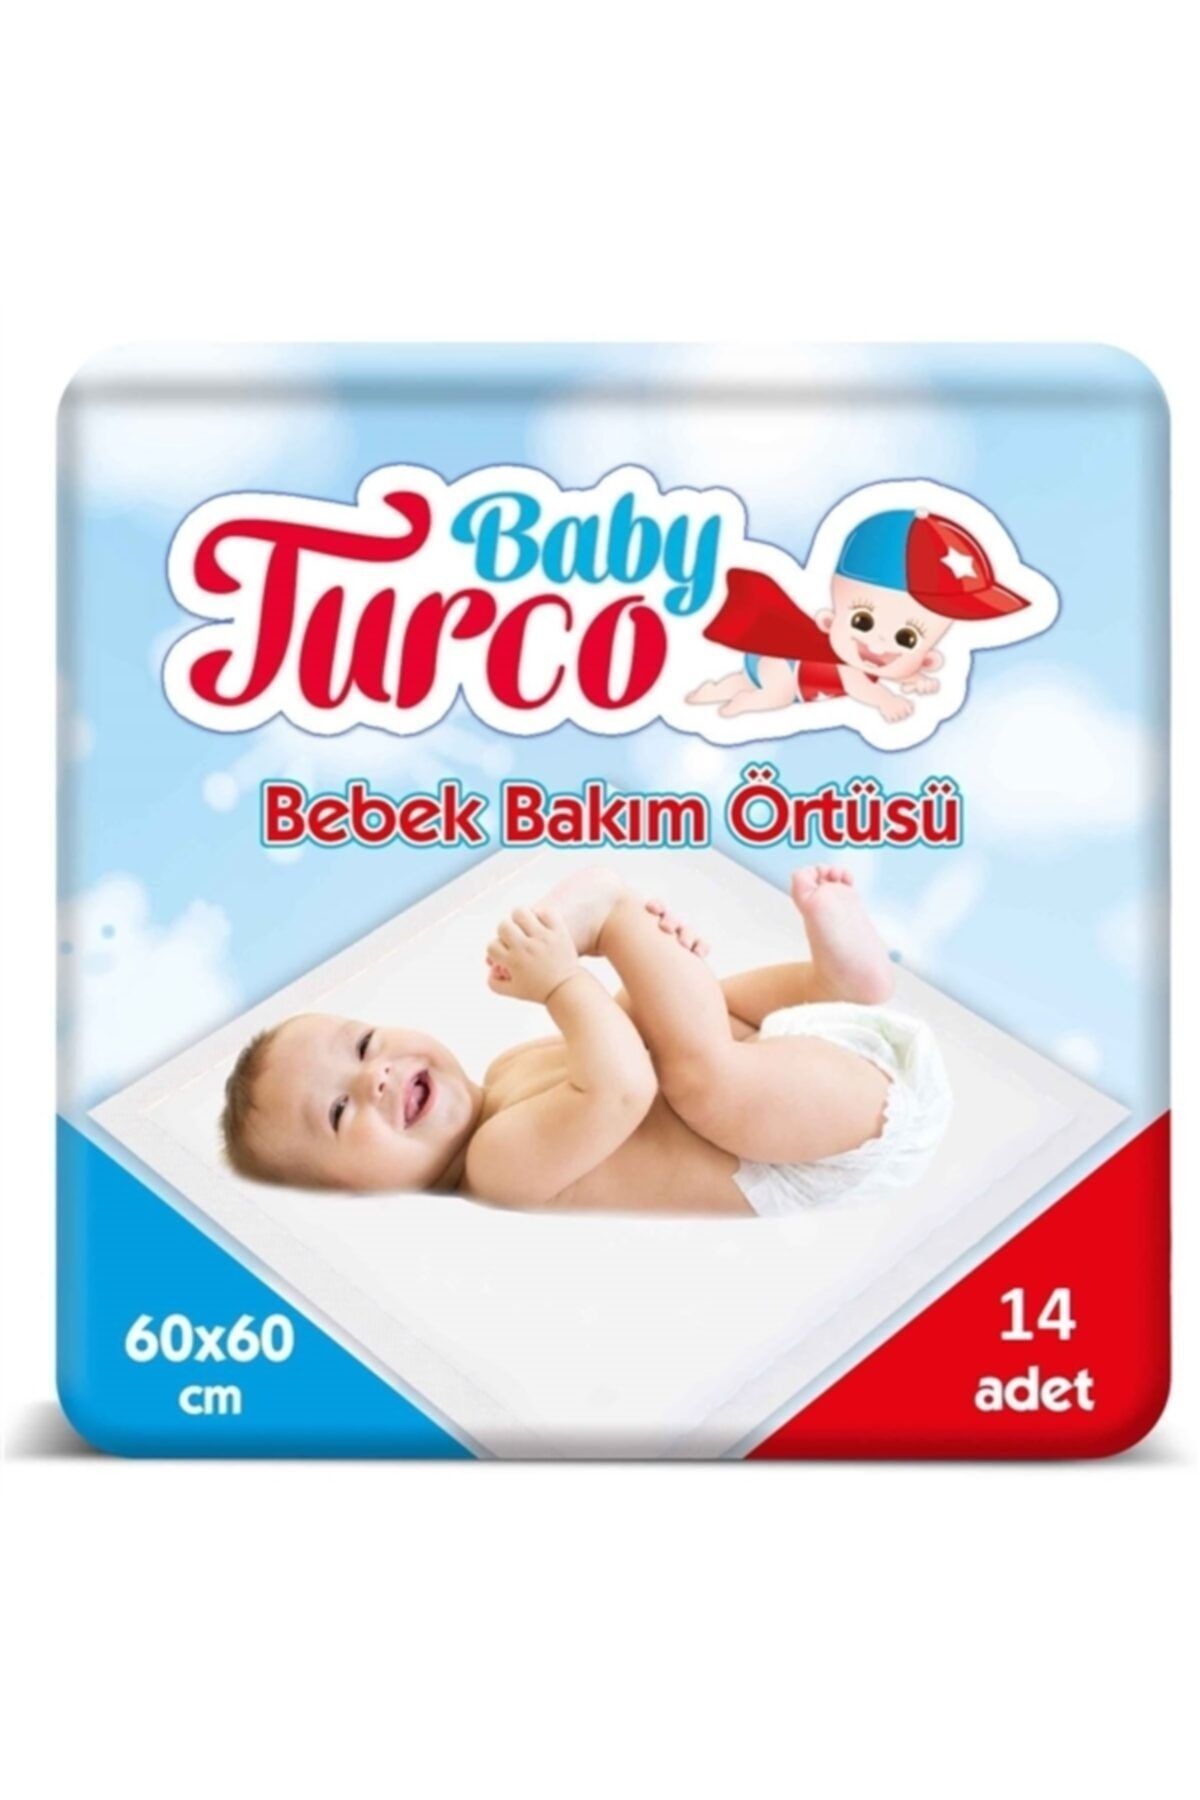 Baby Turco Bebek Bakım Örtüsü 60x60 Cm 14 Adet Bebek Bakım Örtüsü 60x60 Cm 14 Adet